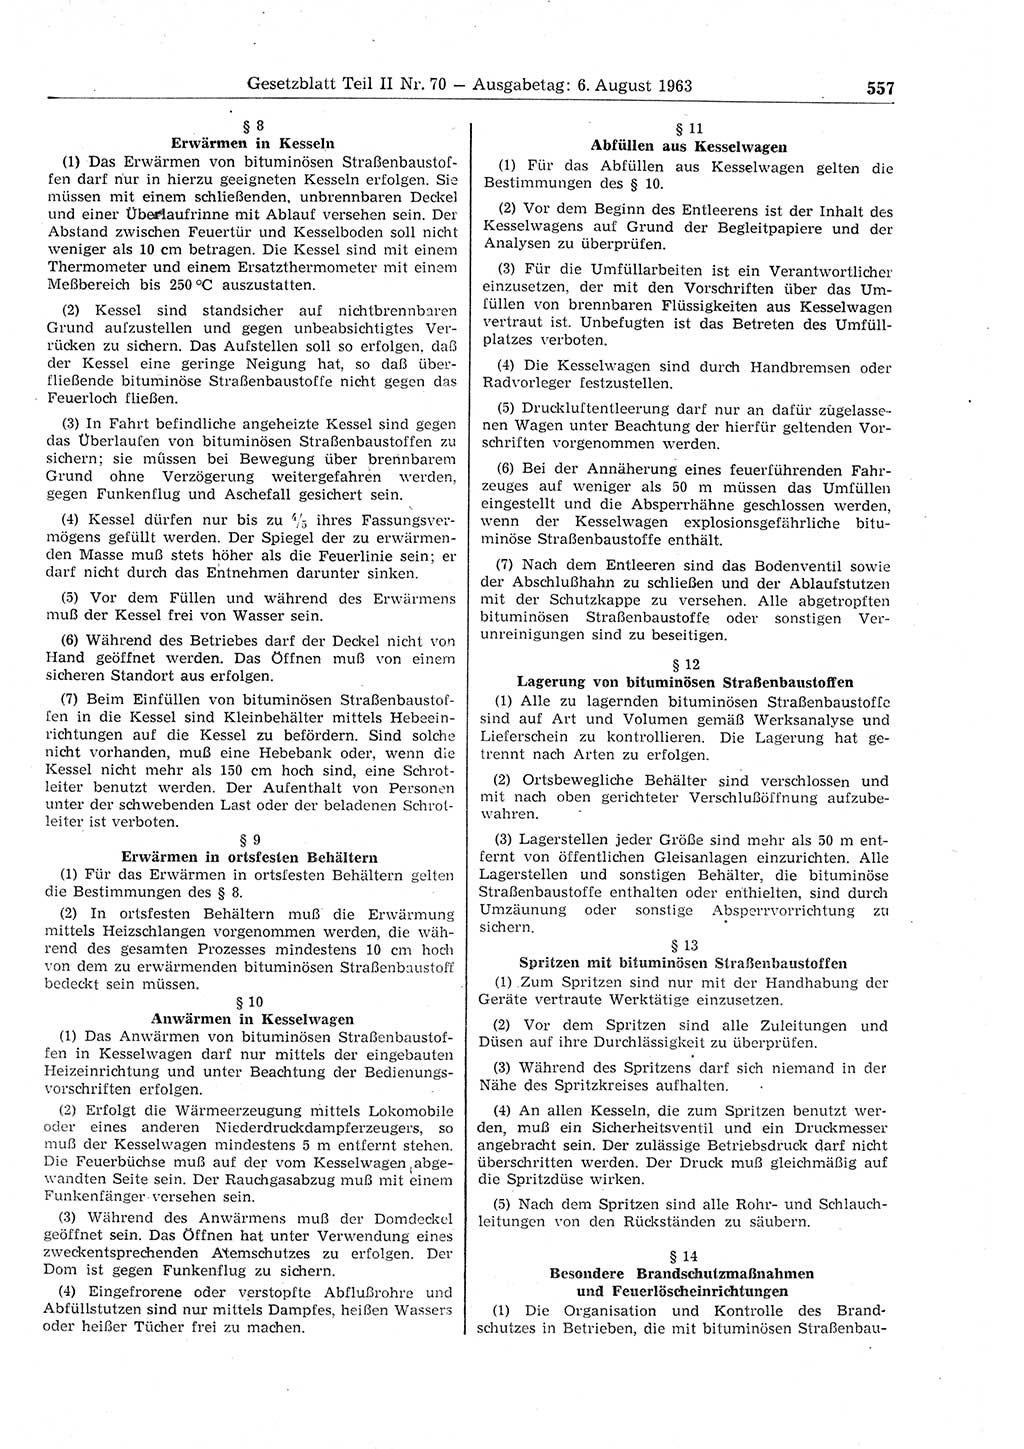 Gesetzblatt (GBl.) der Deutschen Demokratischen Republik (DDR) Teil ⅠⅠ 1963, Seite 557 (GBl. DDR ⅠⅠ 1963, S. 557)